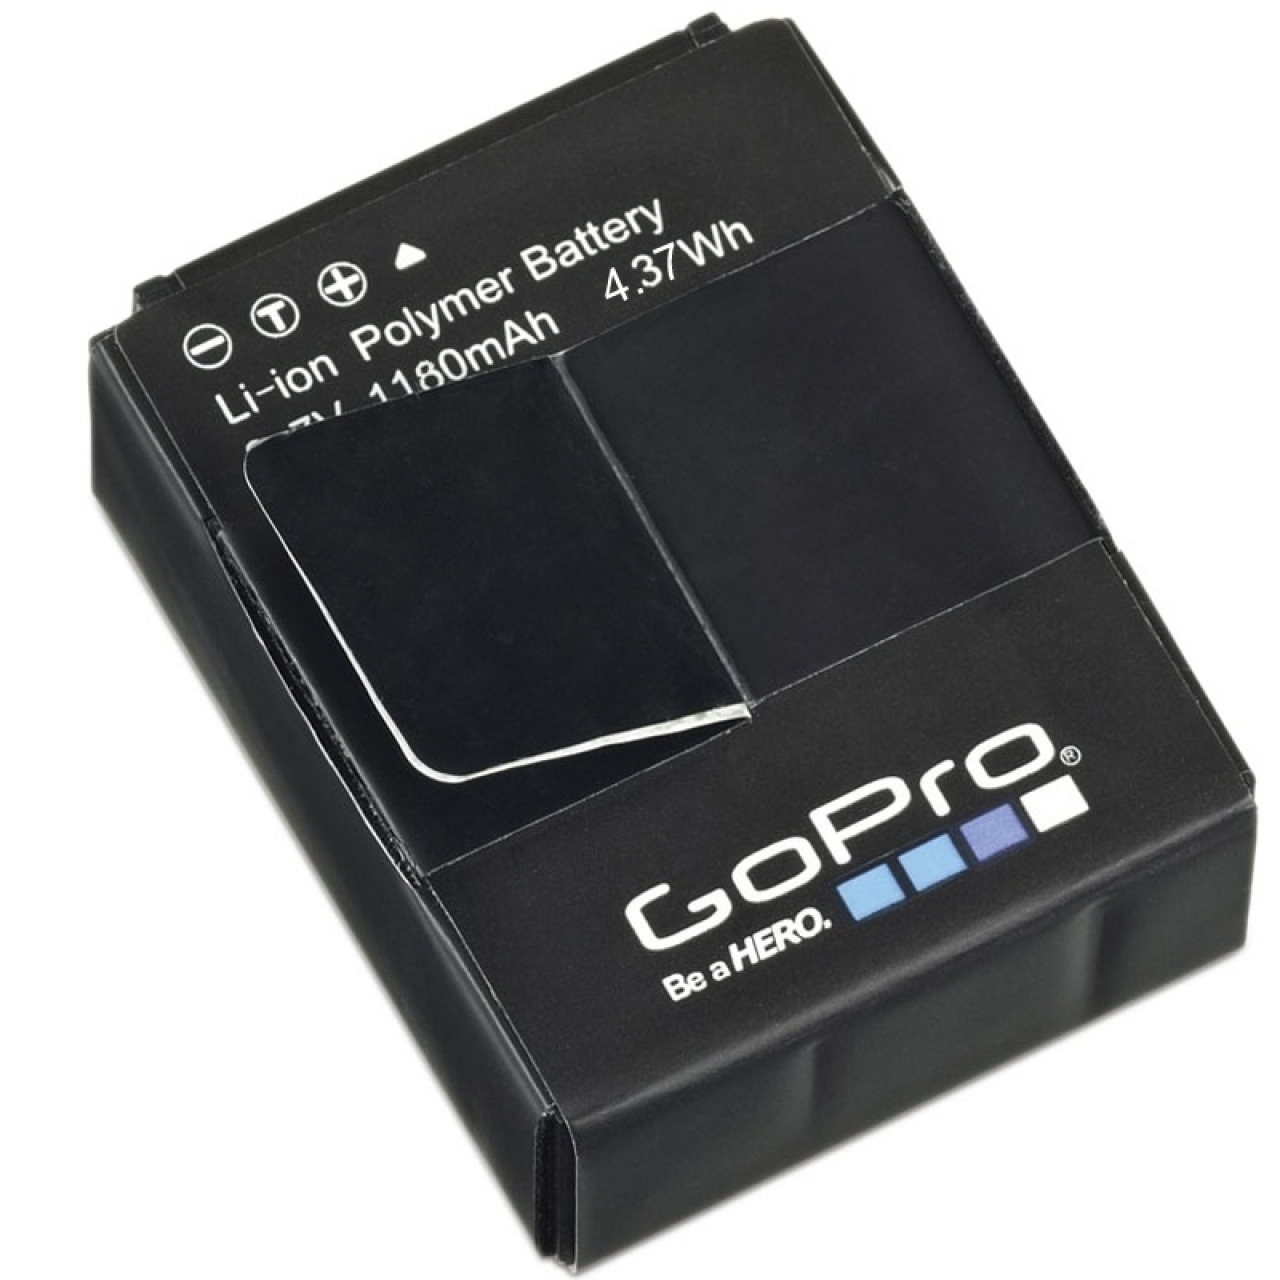 Купить аккумулятор для видеокамеры. Оригинальный аккумулятор GOPRO Hero 3. Перепаковка аккумуляторов GOPRO 3+. Камера на аккумуляторных батареях. Сменная батарея для видеокамер.